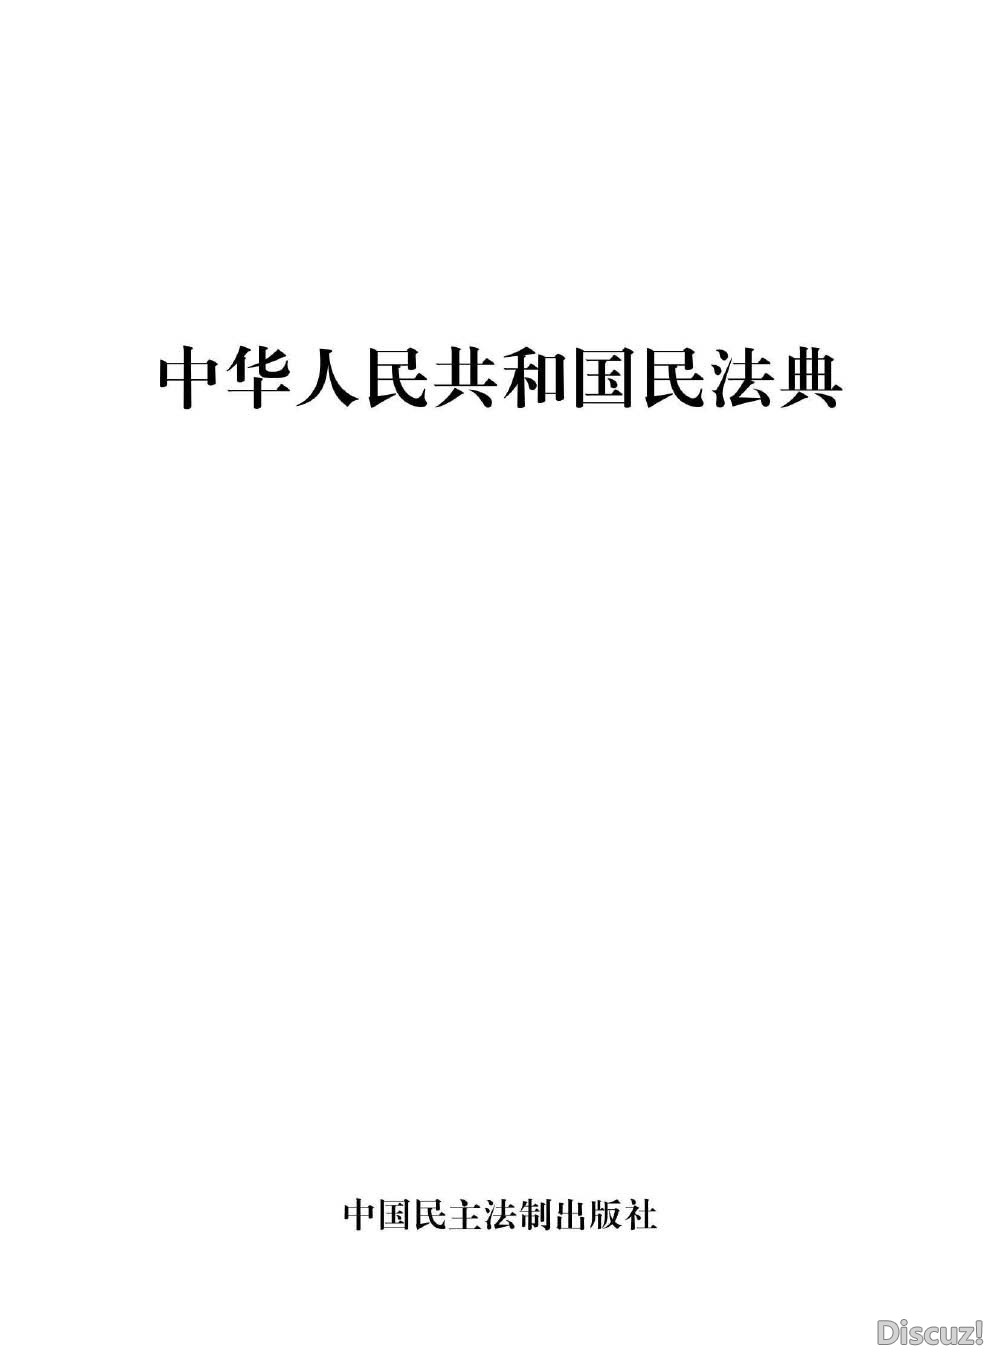 中华人民共和国民法典_页面_2.jpg